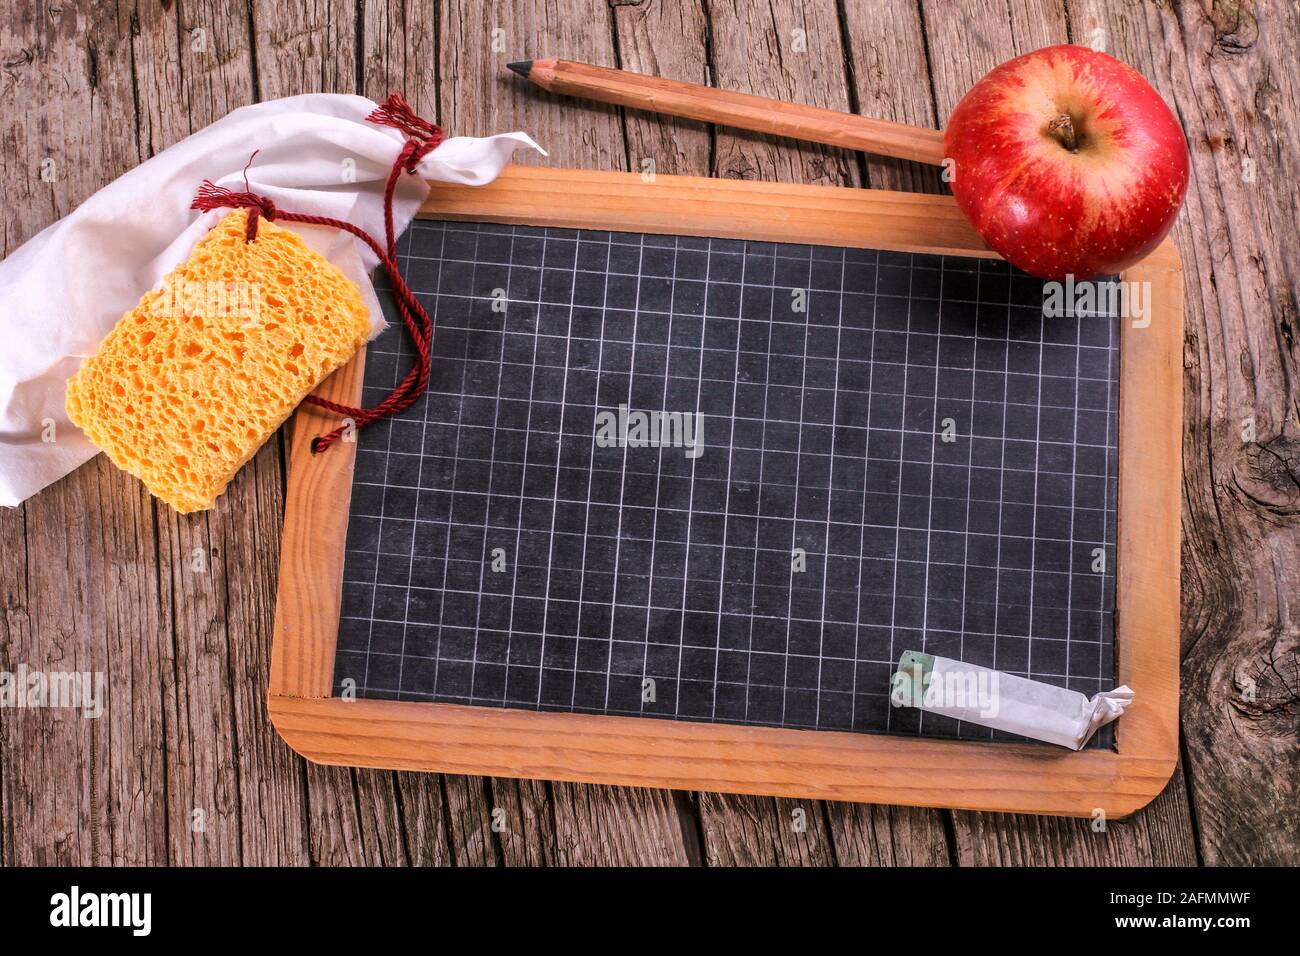 Blackboard with apple and sponge Stock Photo